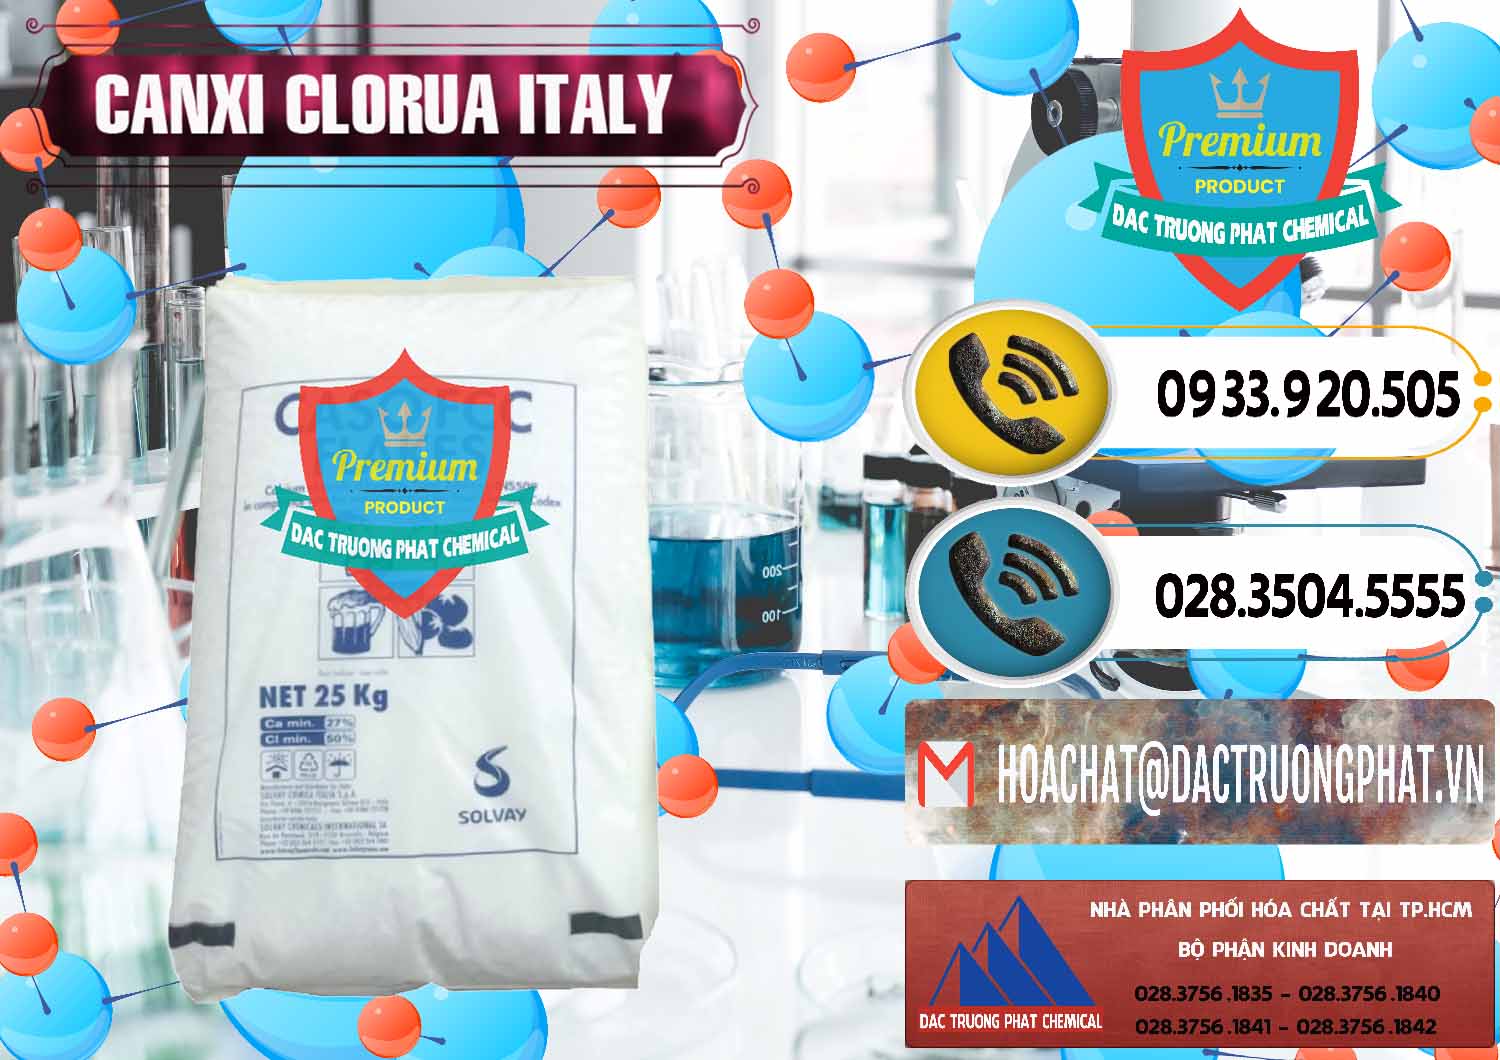 Cty chuyên phân phối & bán CaCl2 – Canxi Clorua Food Grade Ý Italy - 0435 - Đơn vị chuyên nhập khẩu _ cung cấp hóa chất tại TP.HCM - hoachatdetnhuom.vn